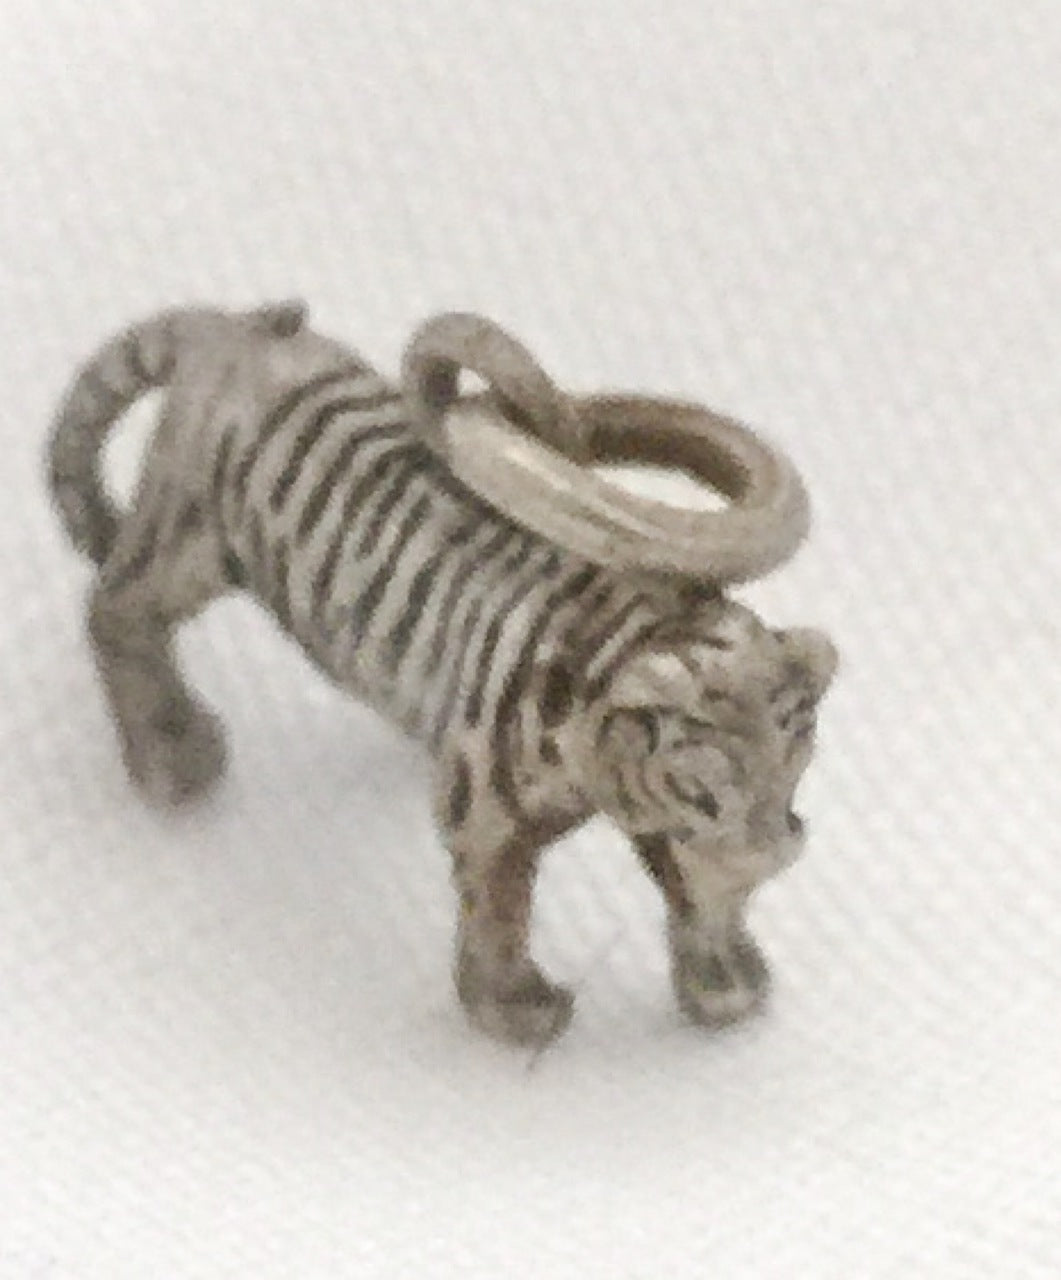 Tiger Charm Sterling Silver Vintage